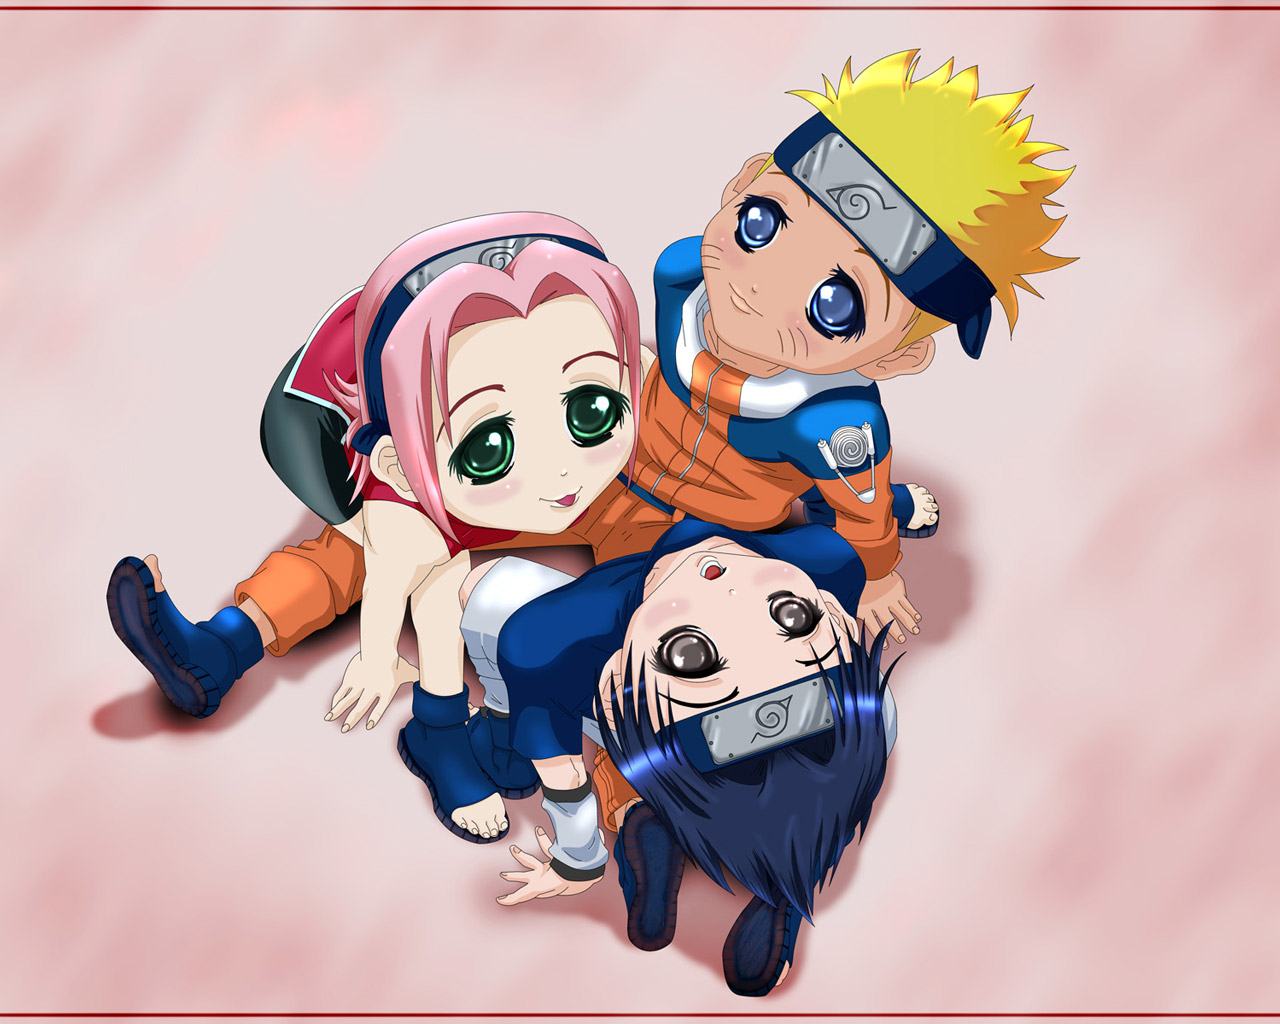 Hình nền Naruto dễ thương sẽ khiến bạn cảm thấy thật vui vẻ. Với các hình ảnh về Naruto và các nhân vật trong bộ truyện này, bạn sẽ được trải nghiệm một niềm vui đầy tươi mới khi xem điện thoại của mình!